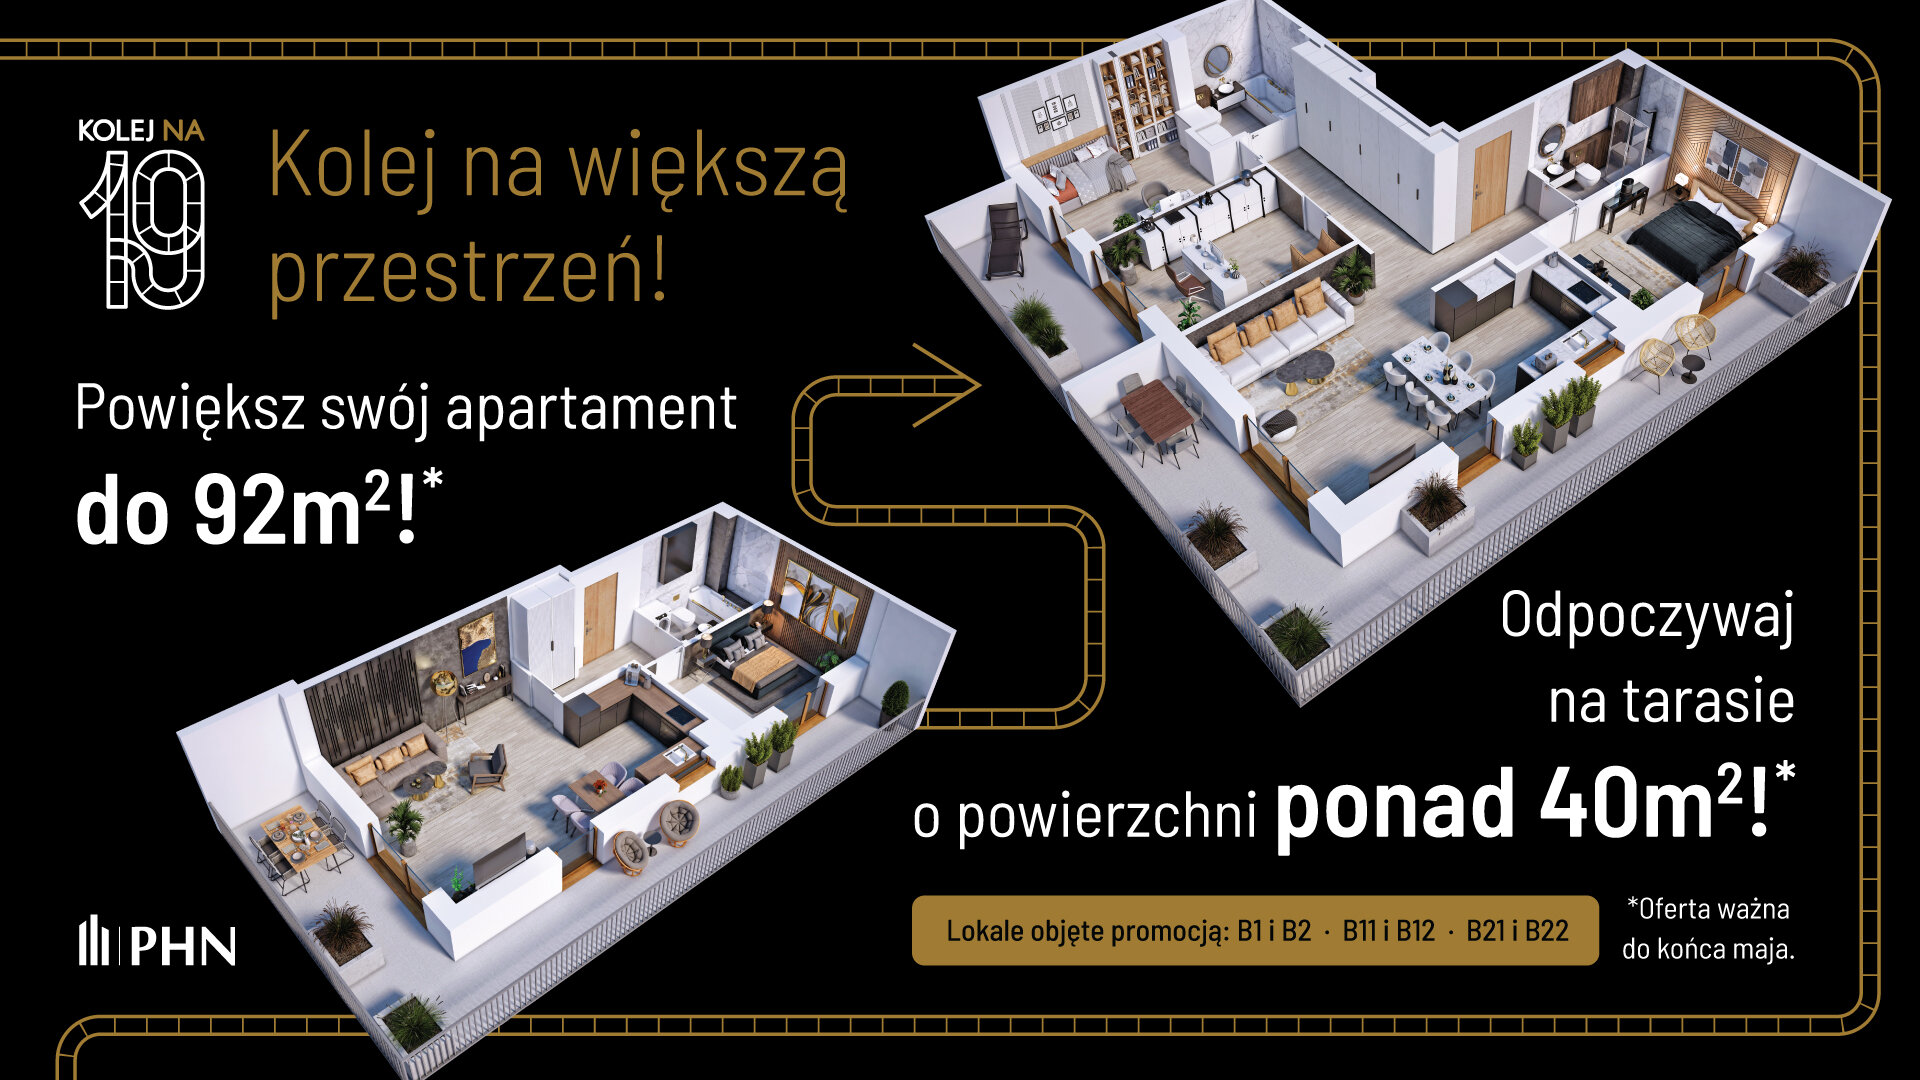 Wiosenna promocja w KOLEJ NA 19 - Apartament, 3 pokoje, Warszawa,57.81 m²,1 046 130 zł